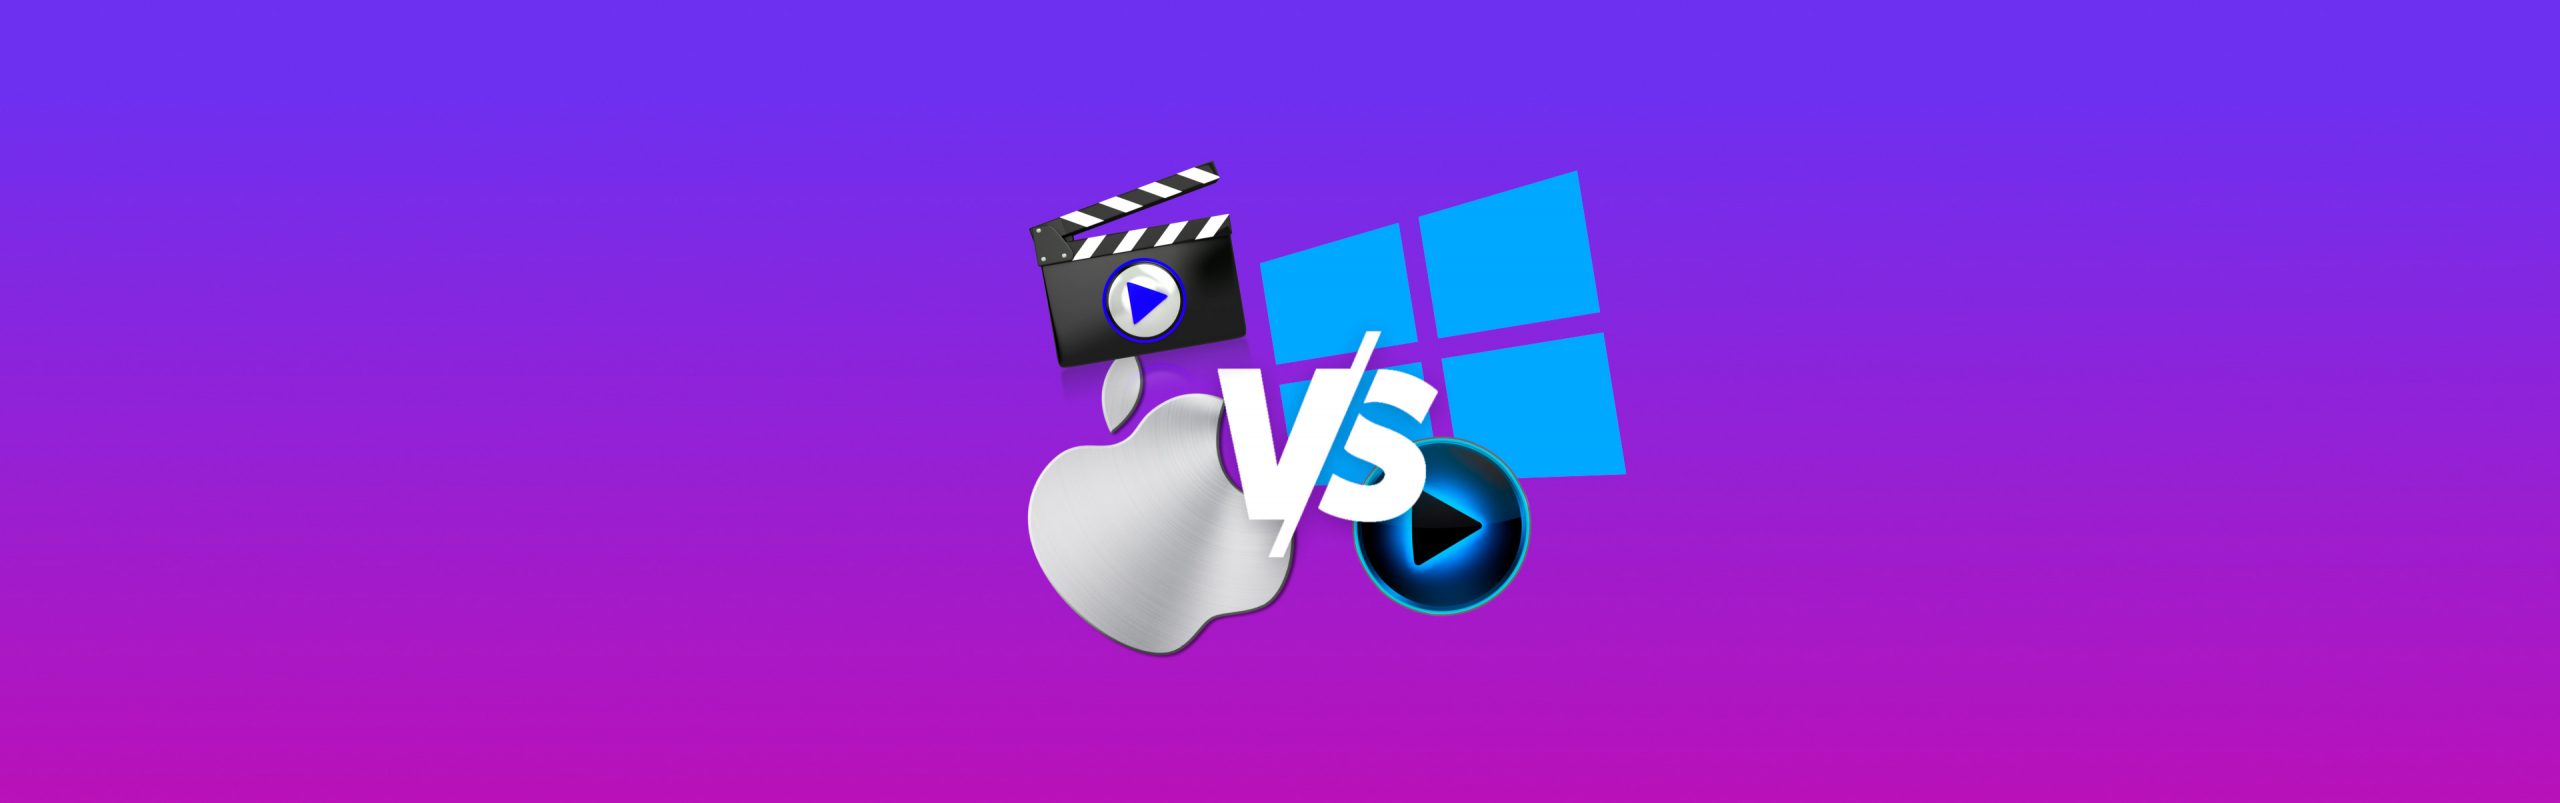 mac vs razer for video editing